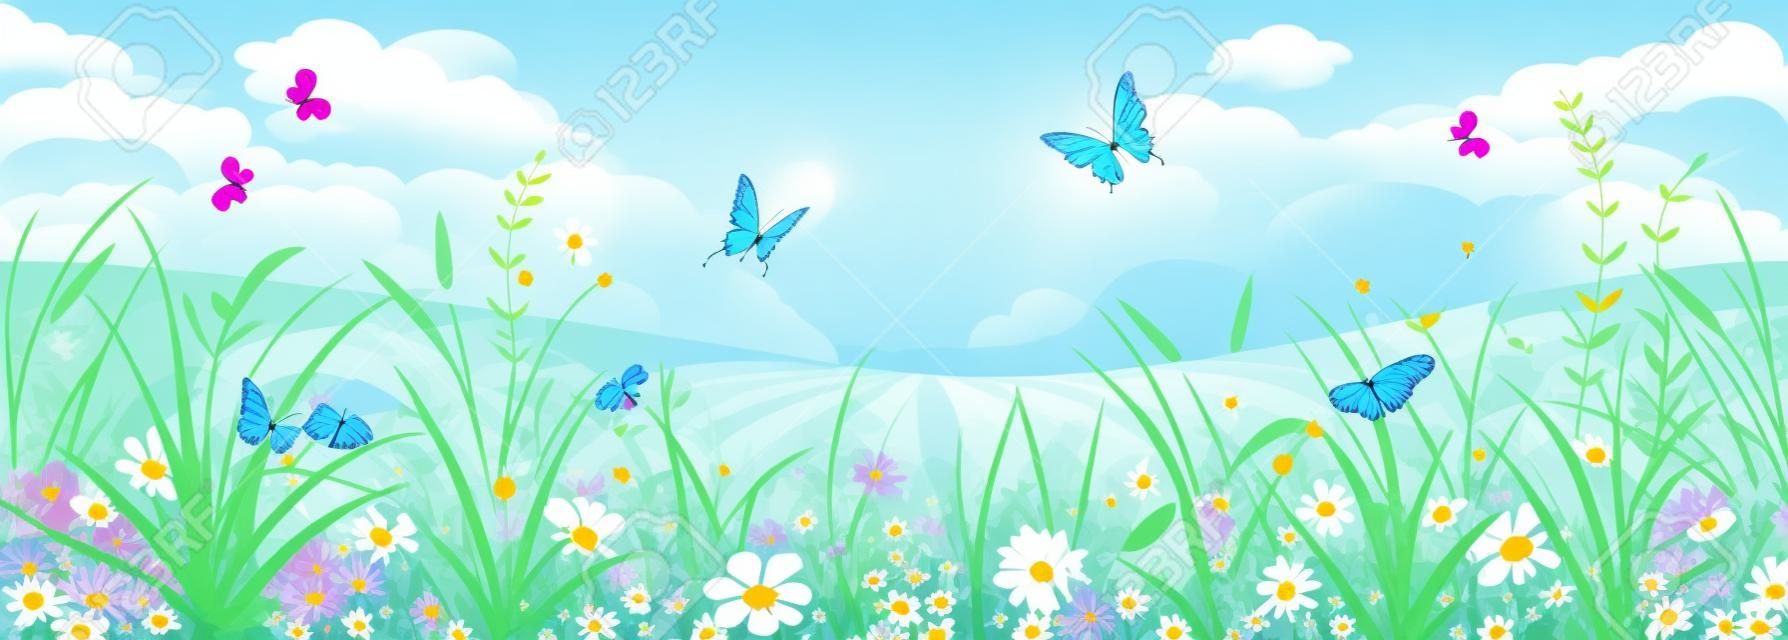 Virágos nyári vagy tavaszi táj, rét virággal, kék ég és a pillangók